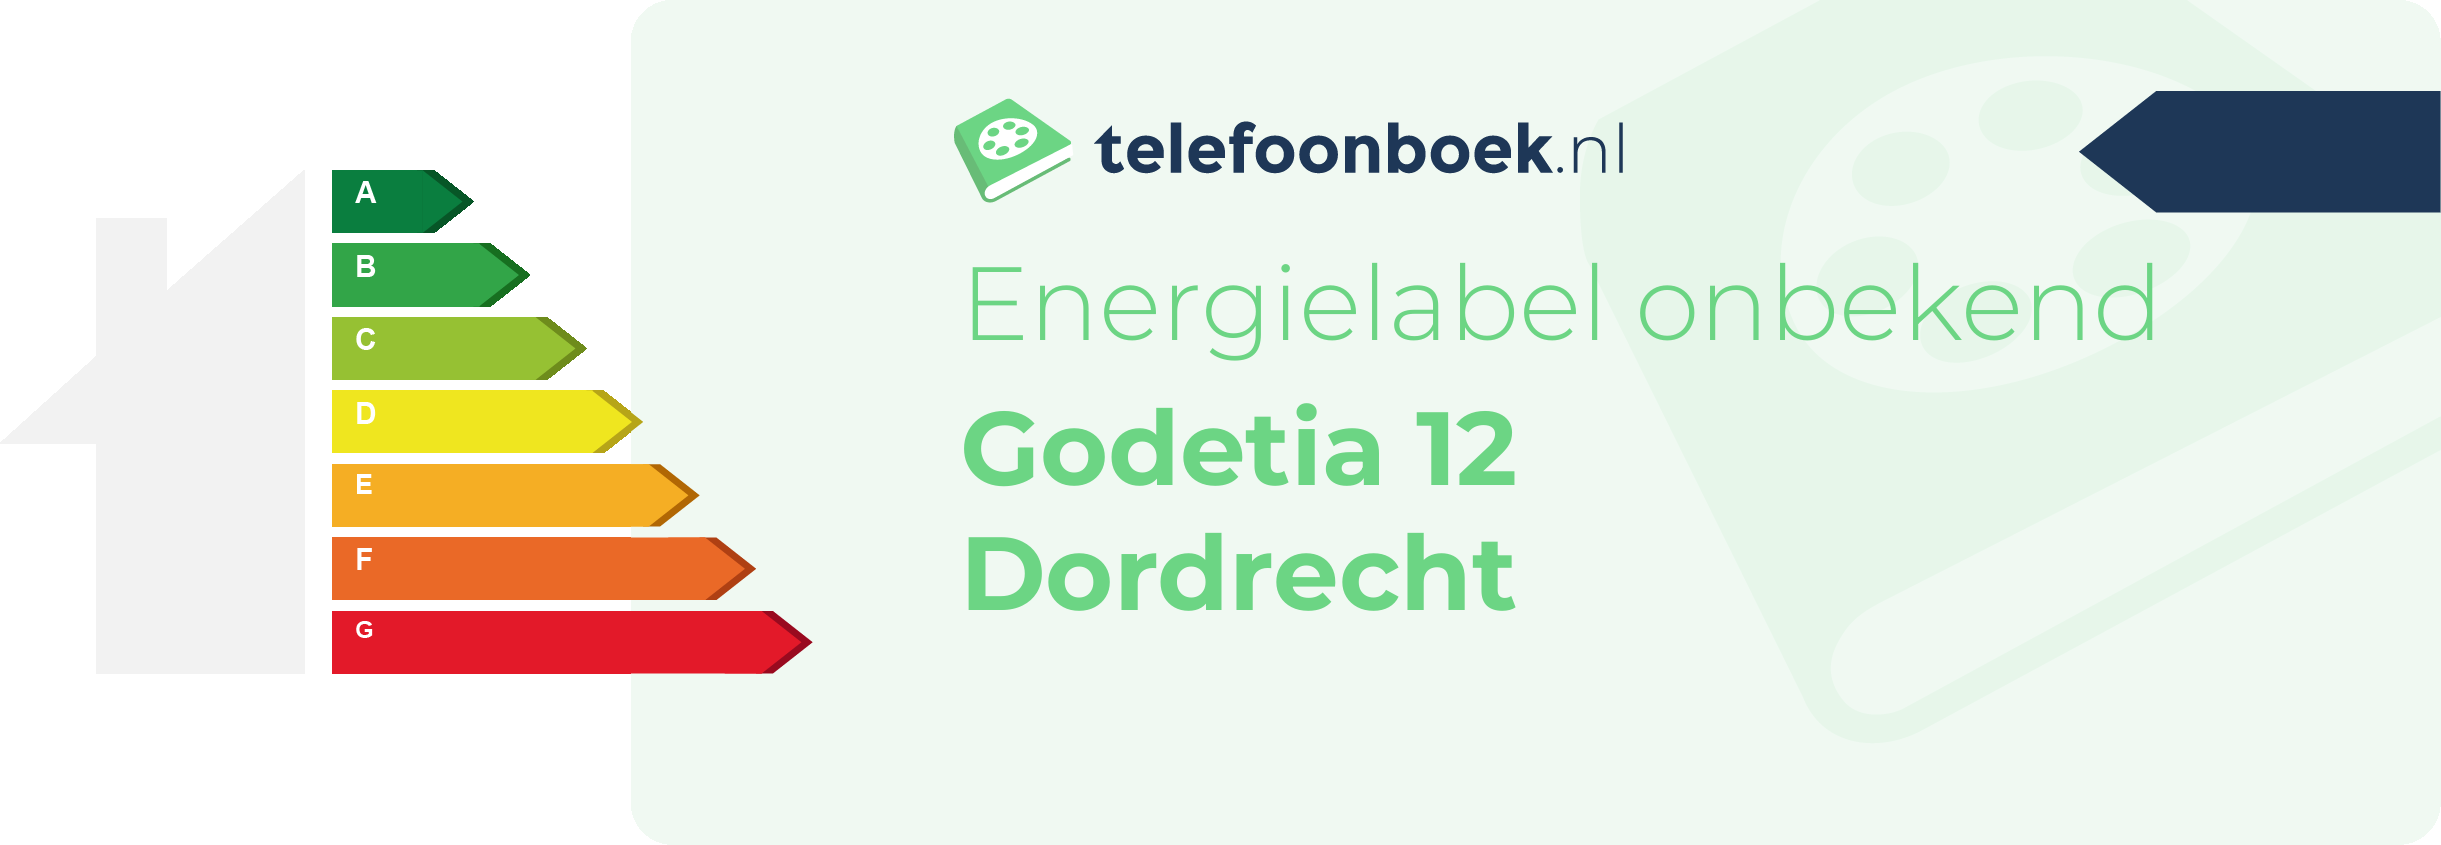 Energielabel Godetia 12 Dordrecht